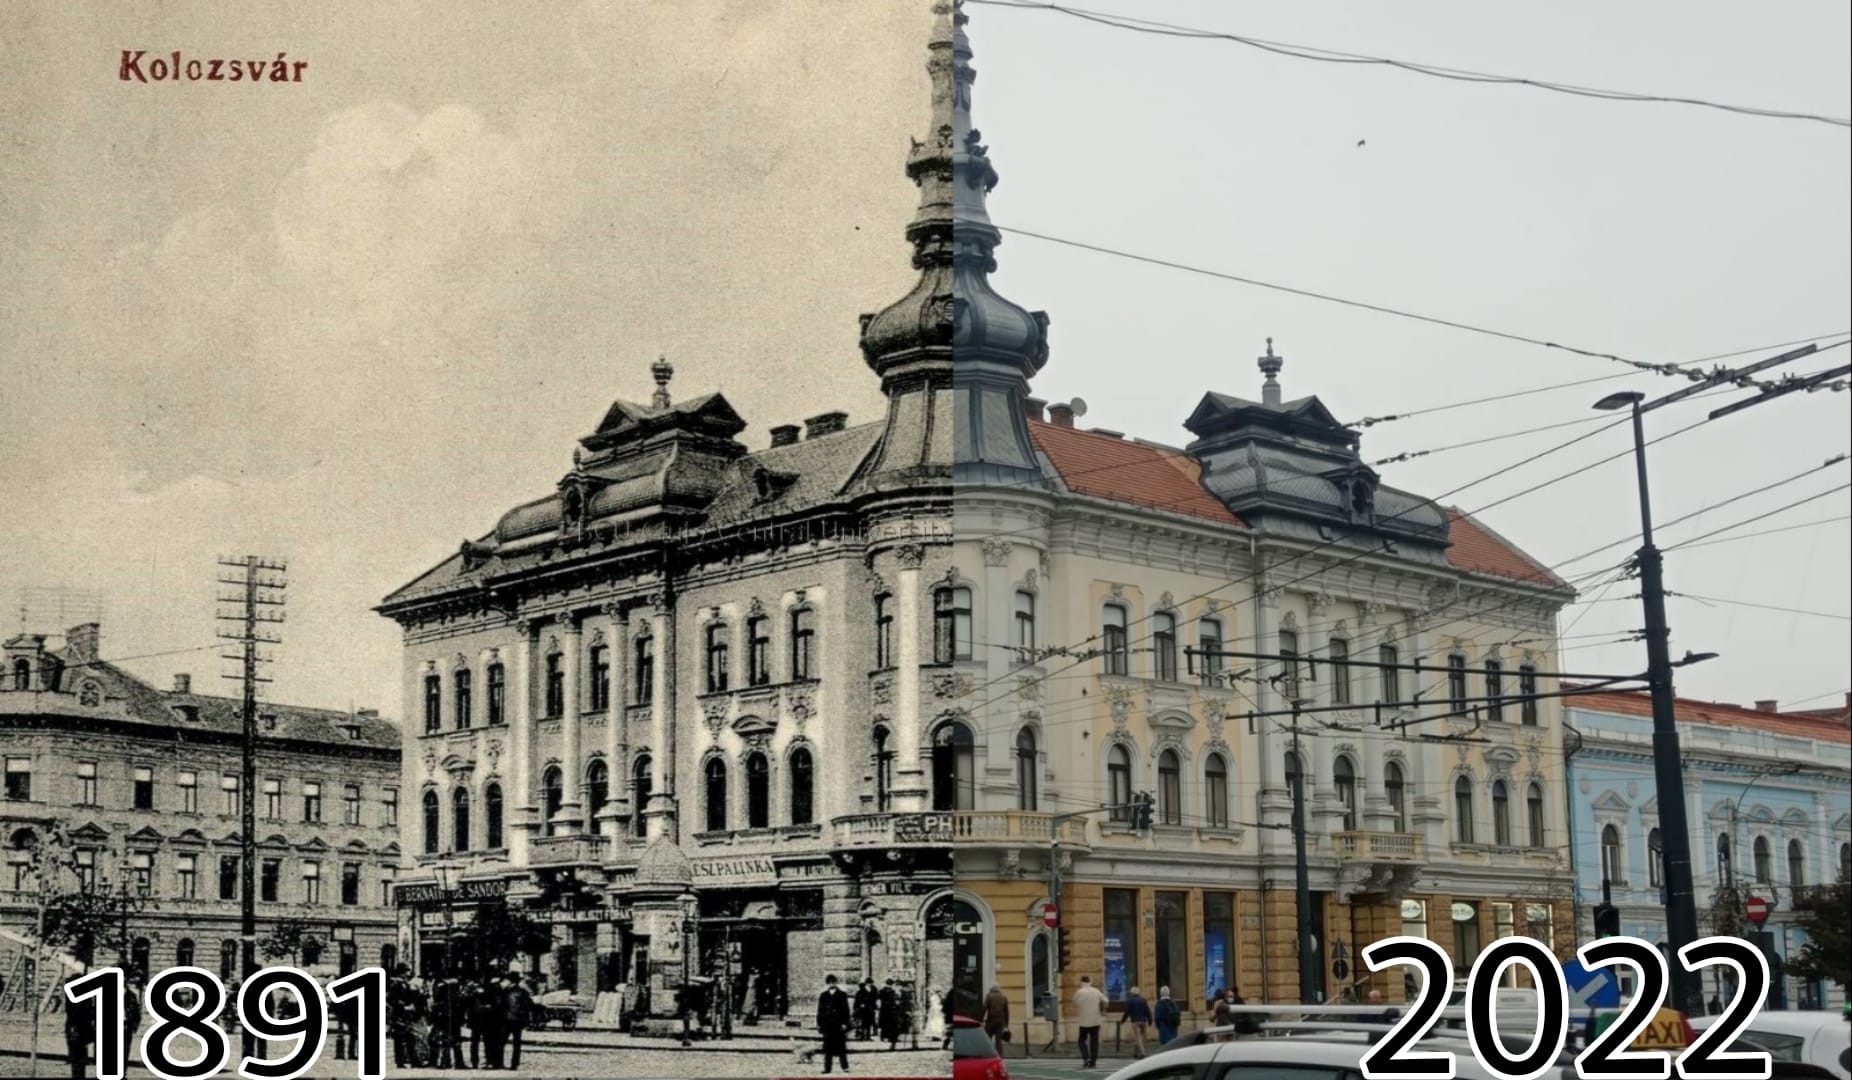 Fotografii la un secol distanță. Clujul este un oraș încărcat de istorie, iar în oraș există numeroase clădiri care impresionează prin arhitectură. Puțini știu că în Palatul Babos a locuit unul dintre cei mai emblematici violoniști români.